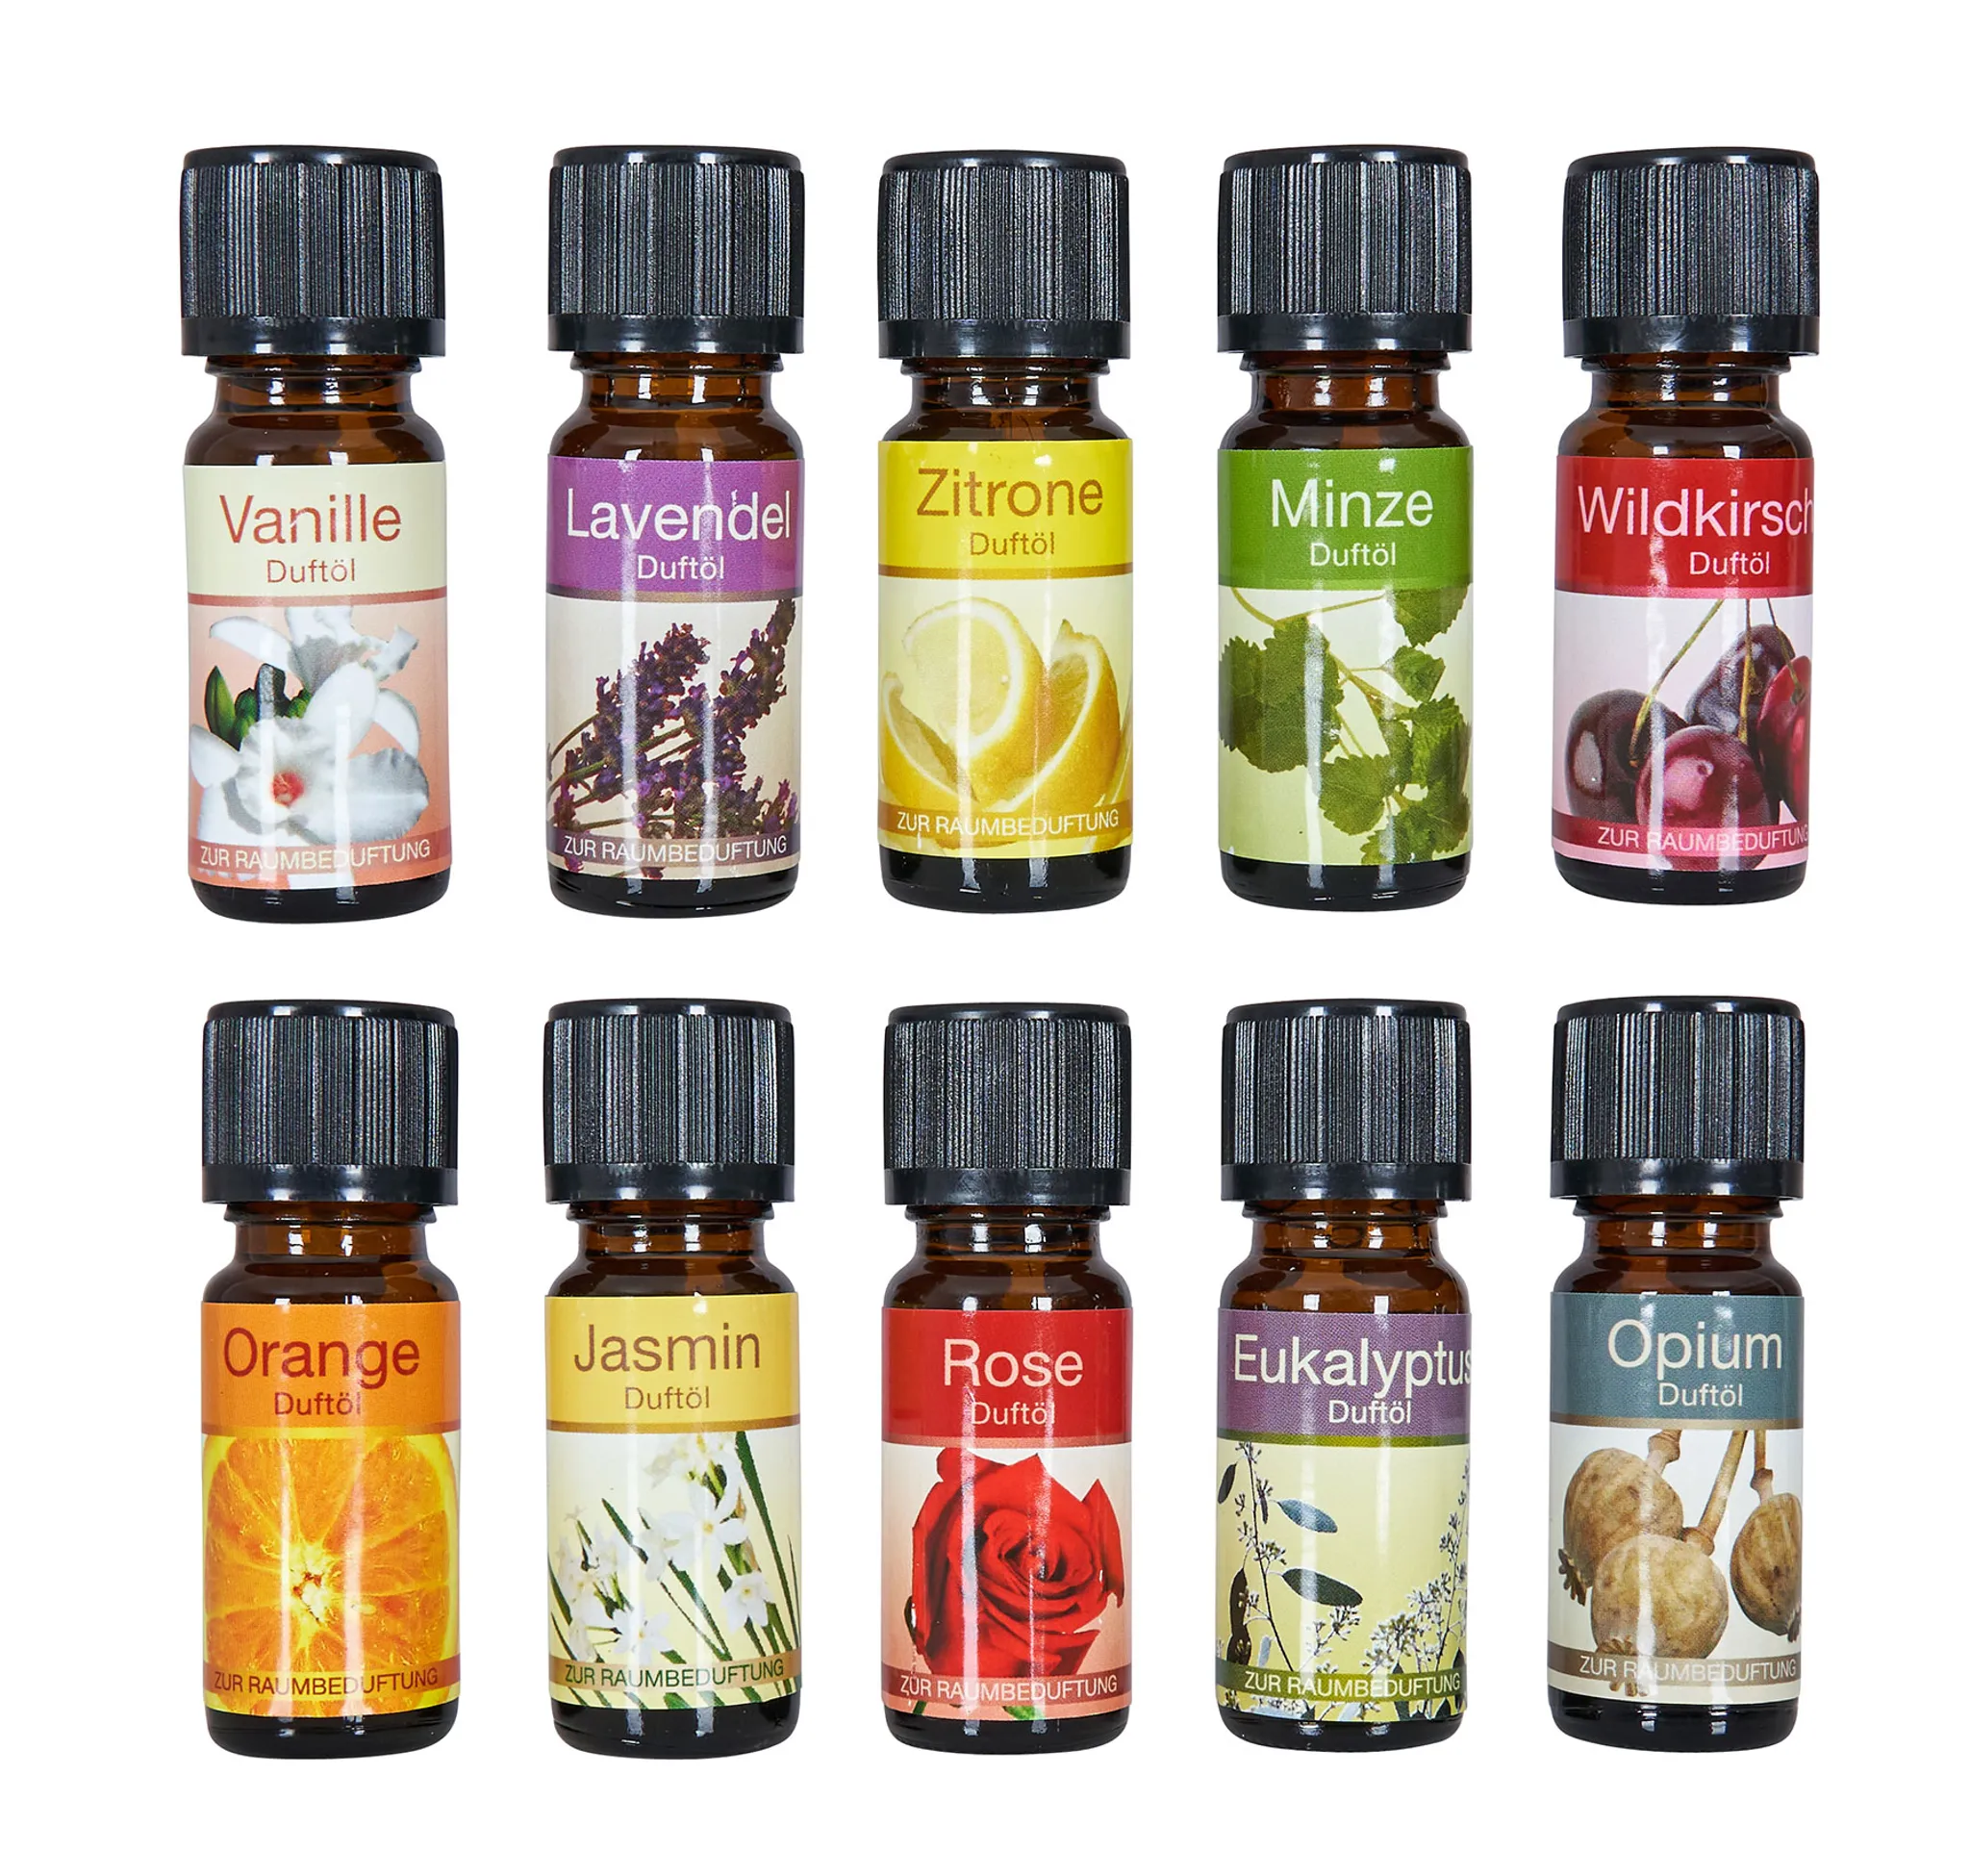 10ML 100% natürliches ätherisches Öl Aromatherapie Diffusor Parfüm Duft Öl  Spa